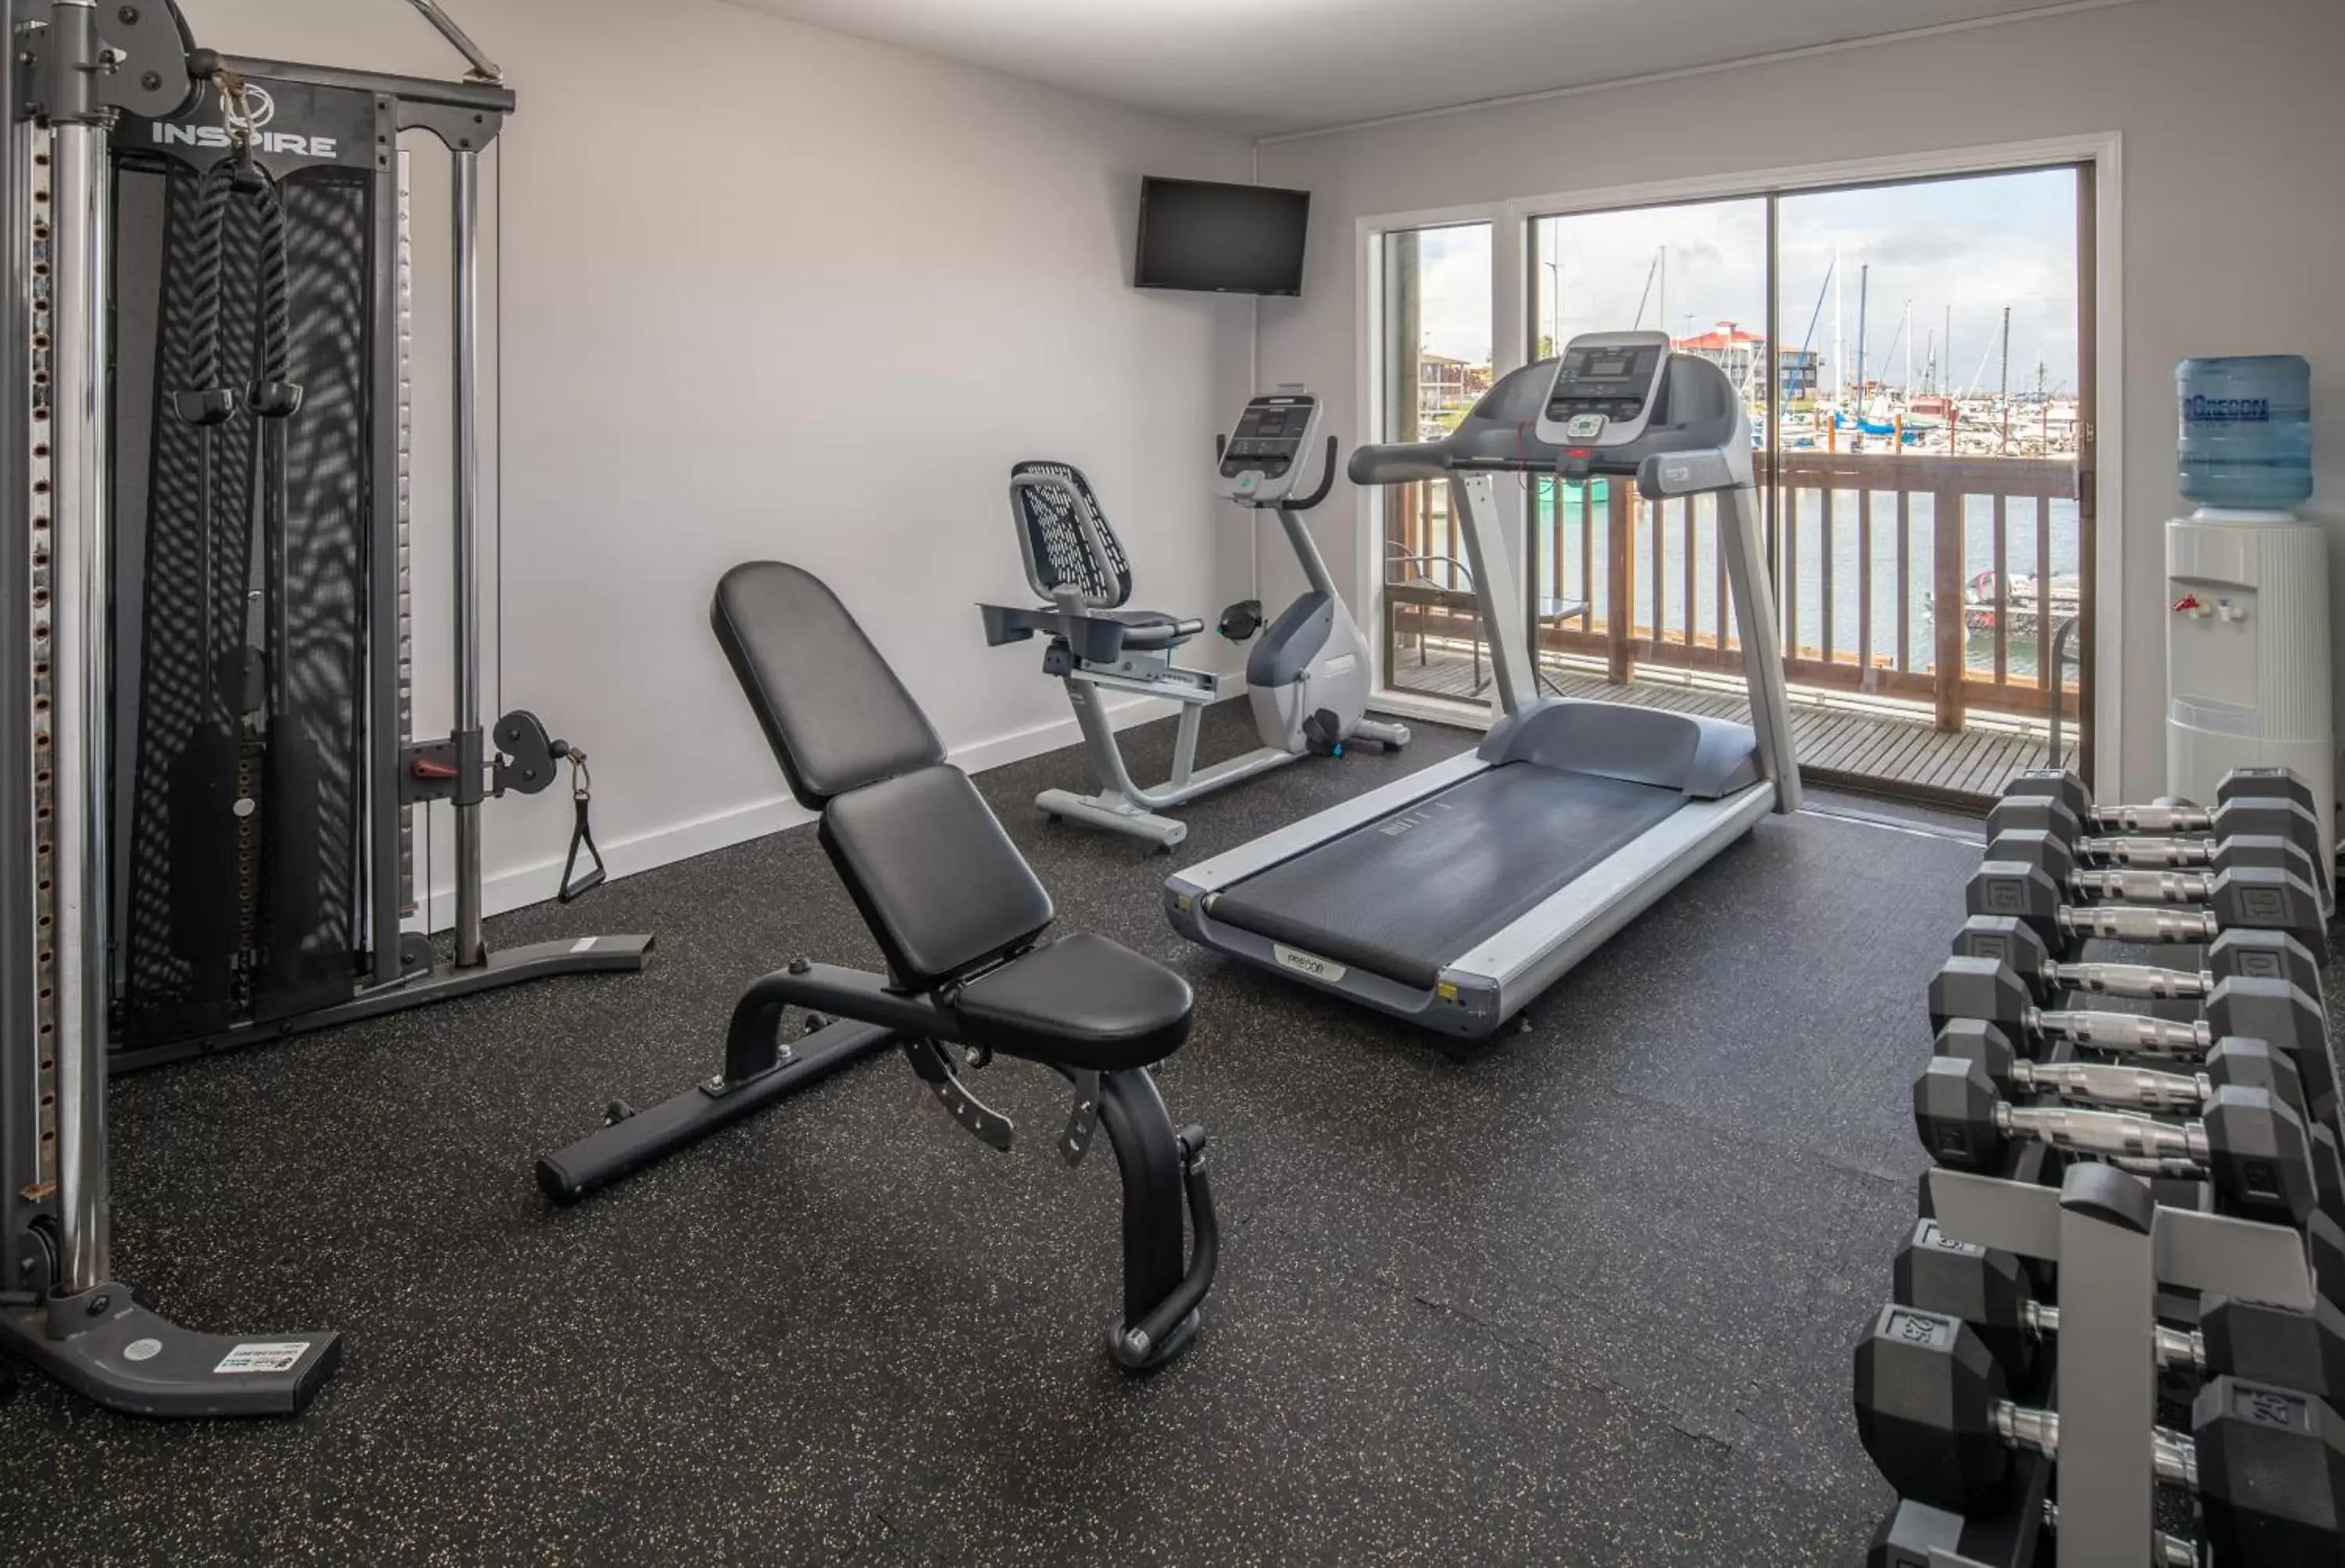 Fitness centre/facilities, Fitness Center/Facilities in Astoria Riverwalk Inn